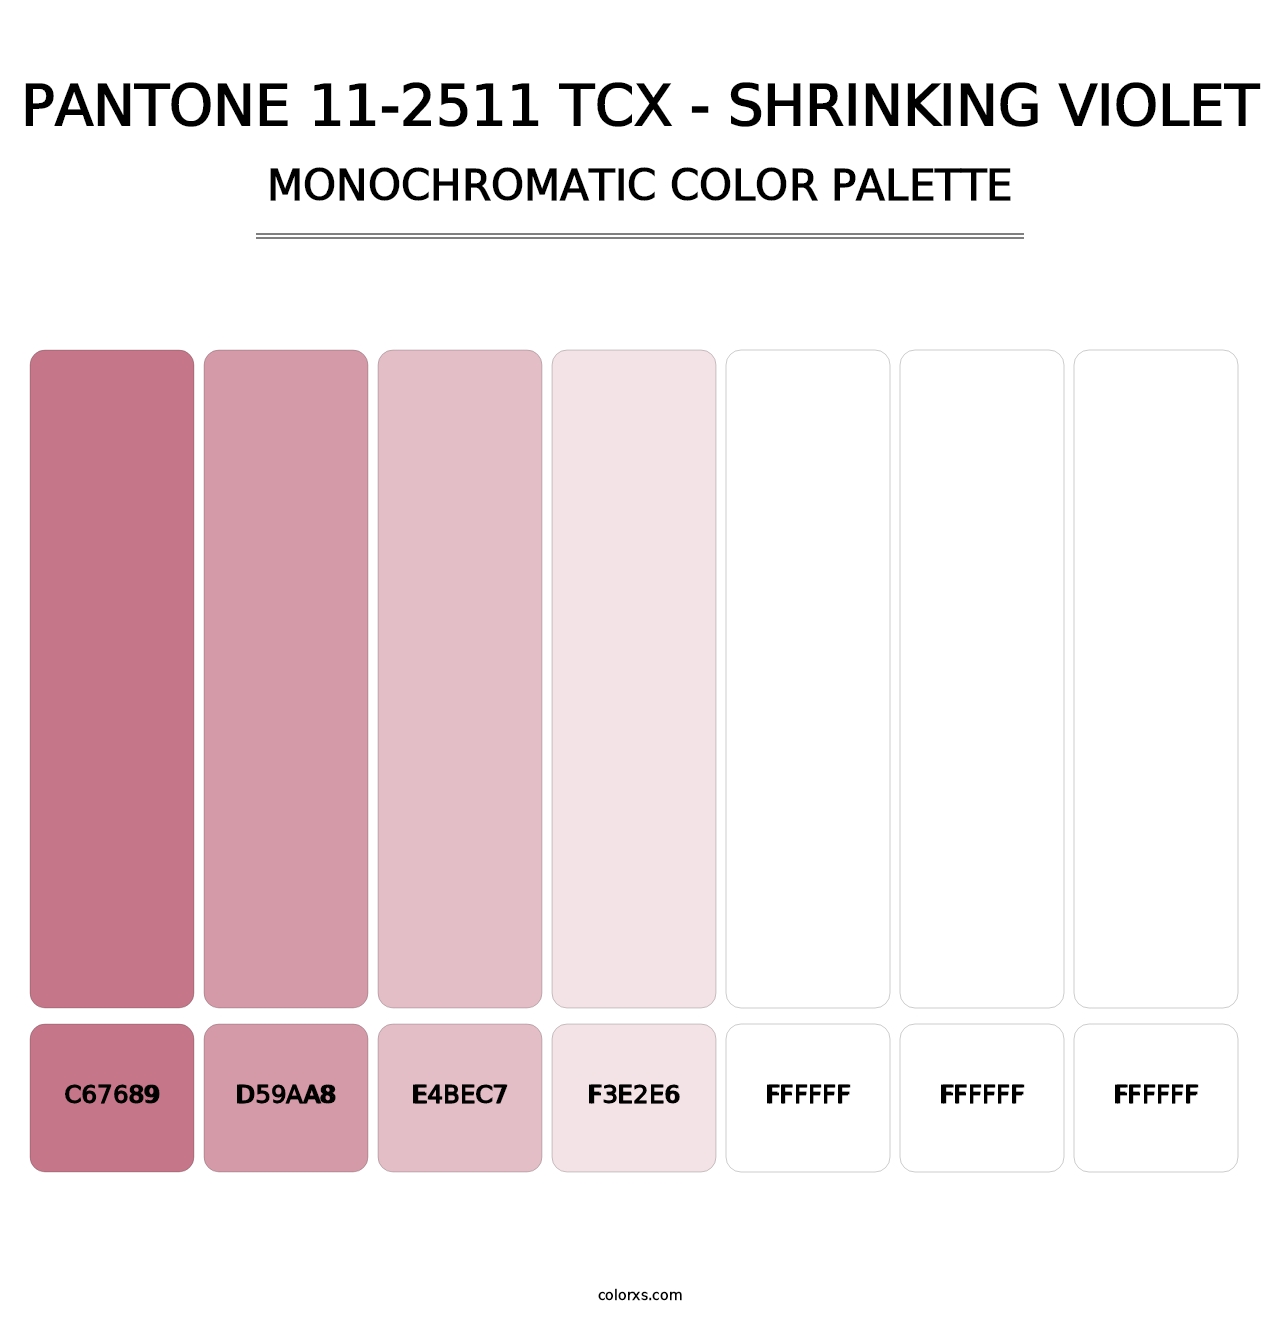 PANTONE 11-2511 TCX - Shrinking Violet - Monochromatic Color Palette